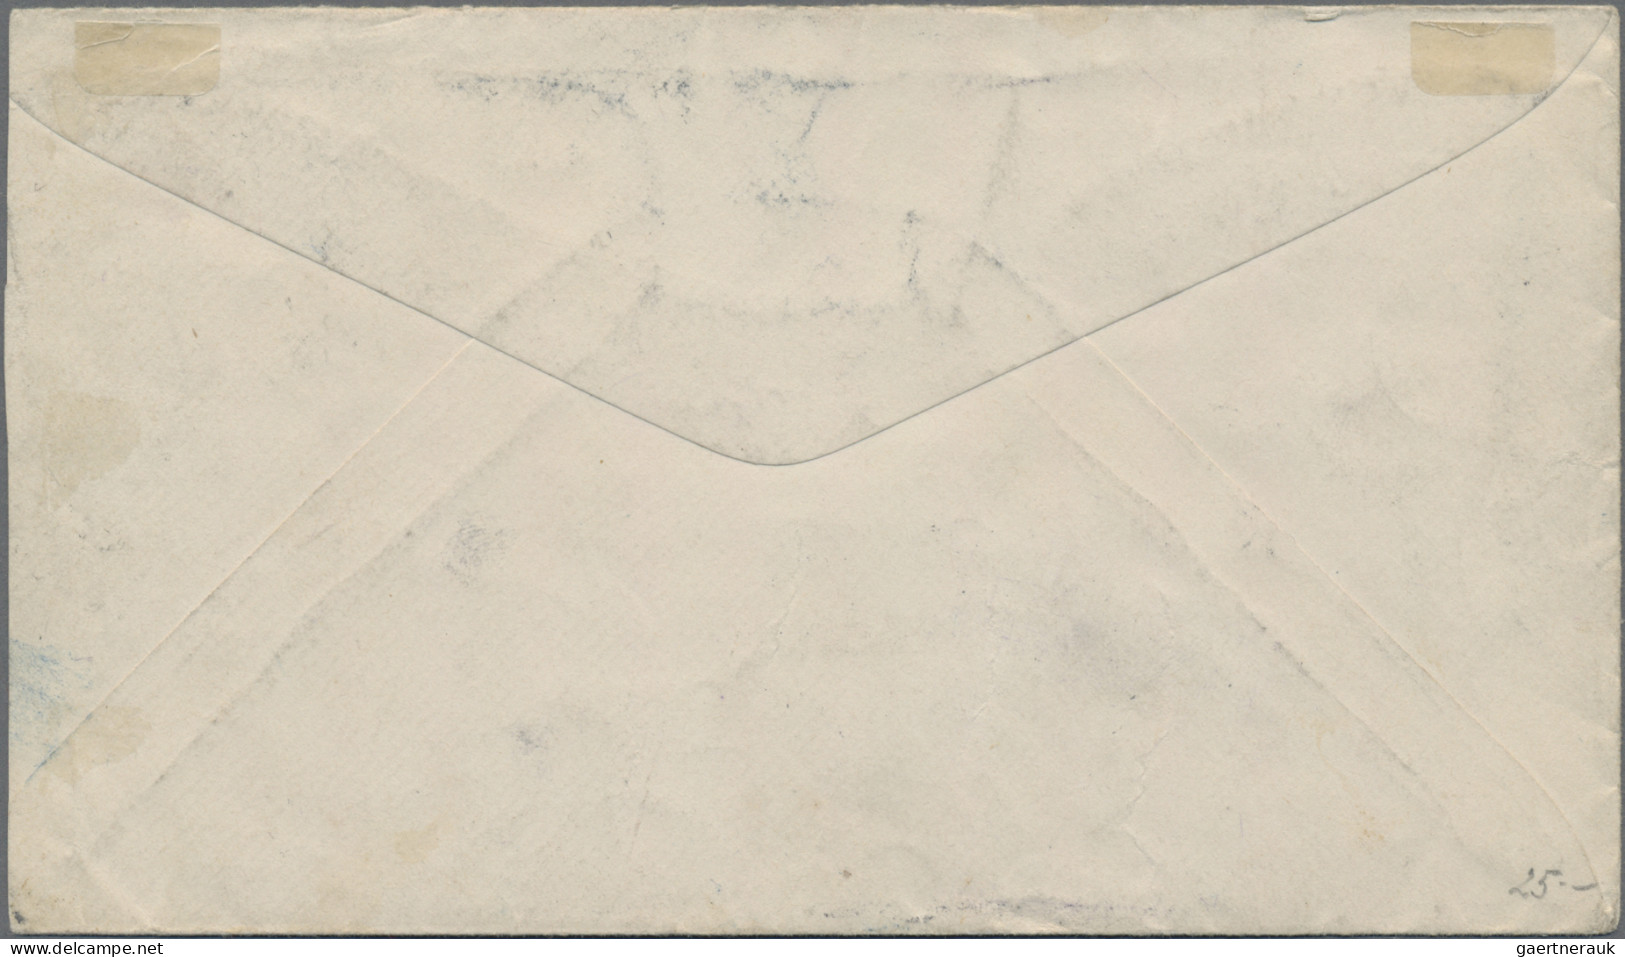 Österreich - Portomarken: 1906/1907, Incoming Mail USA, Zwei Belege Mit Irrtümli - Postage Due